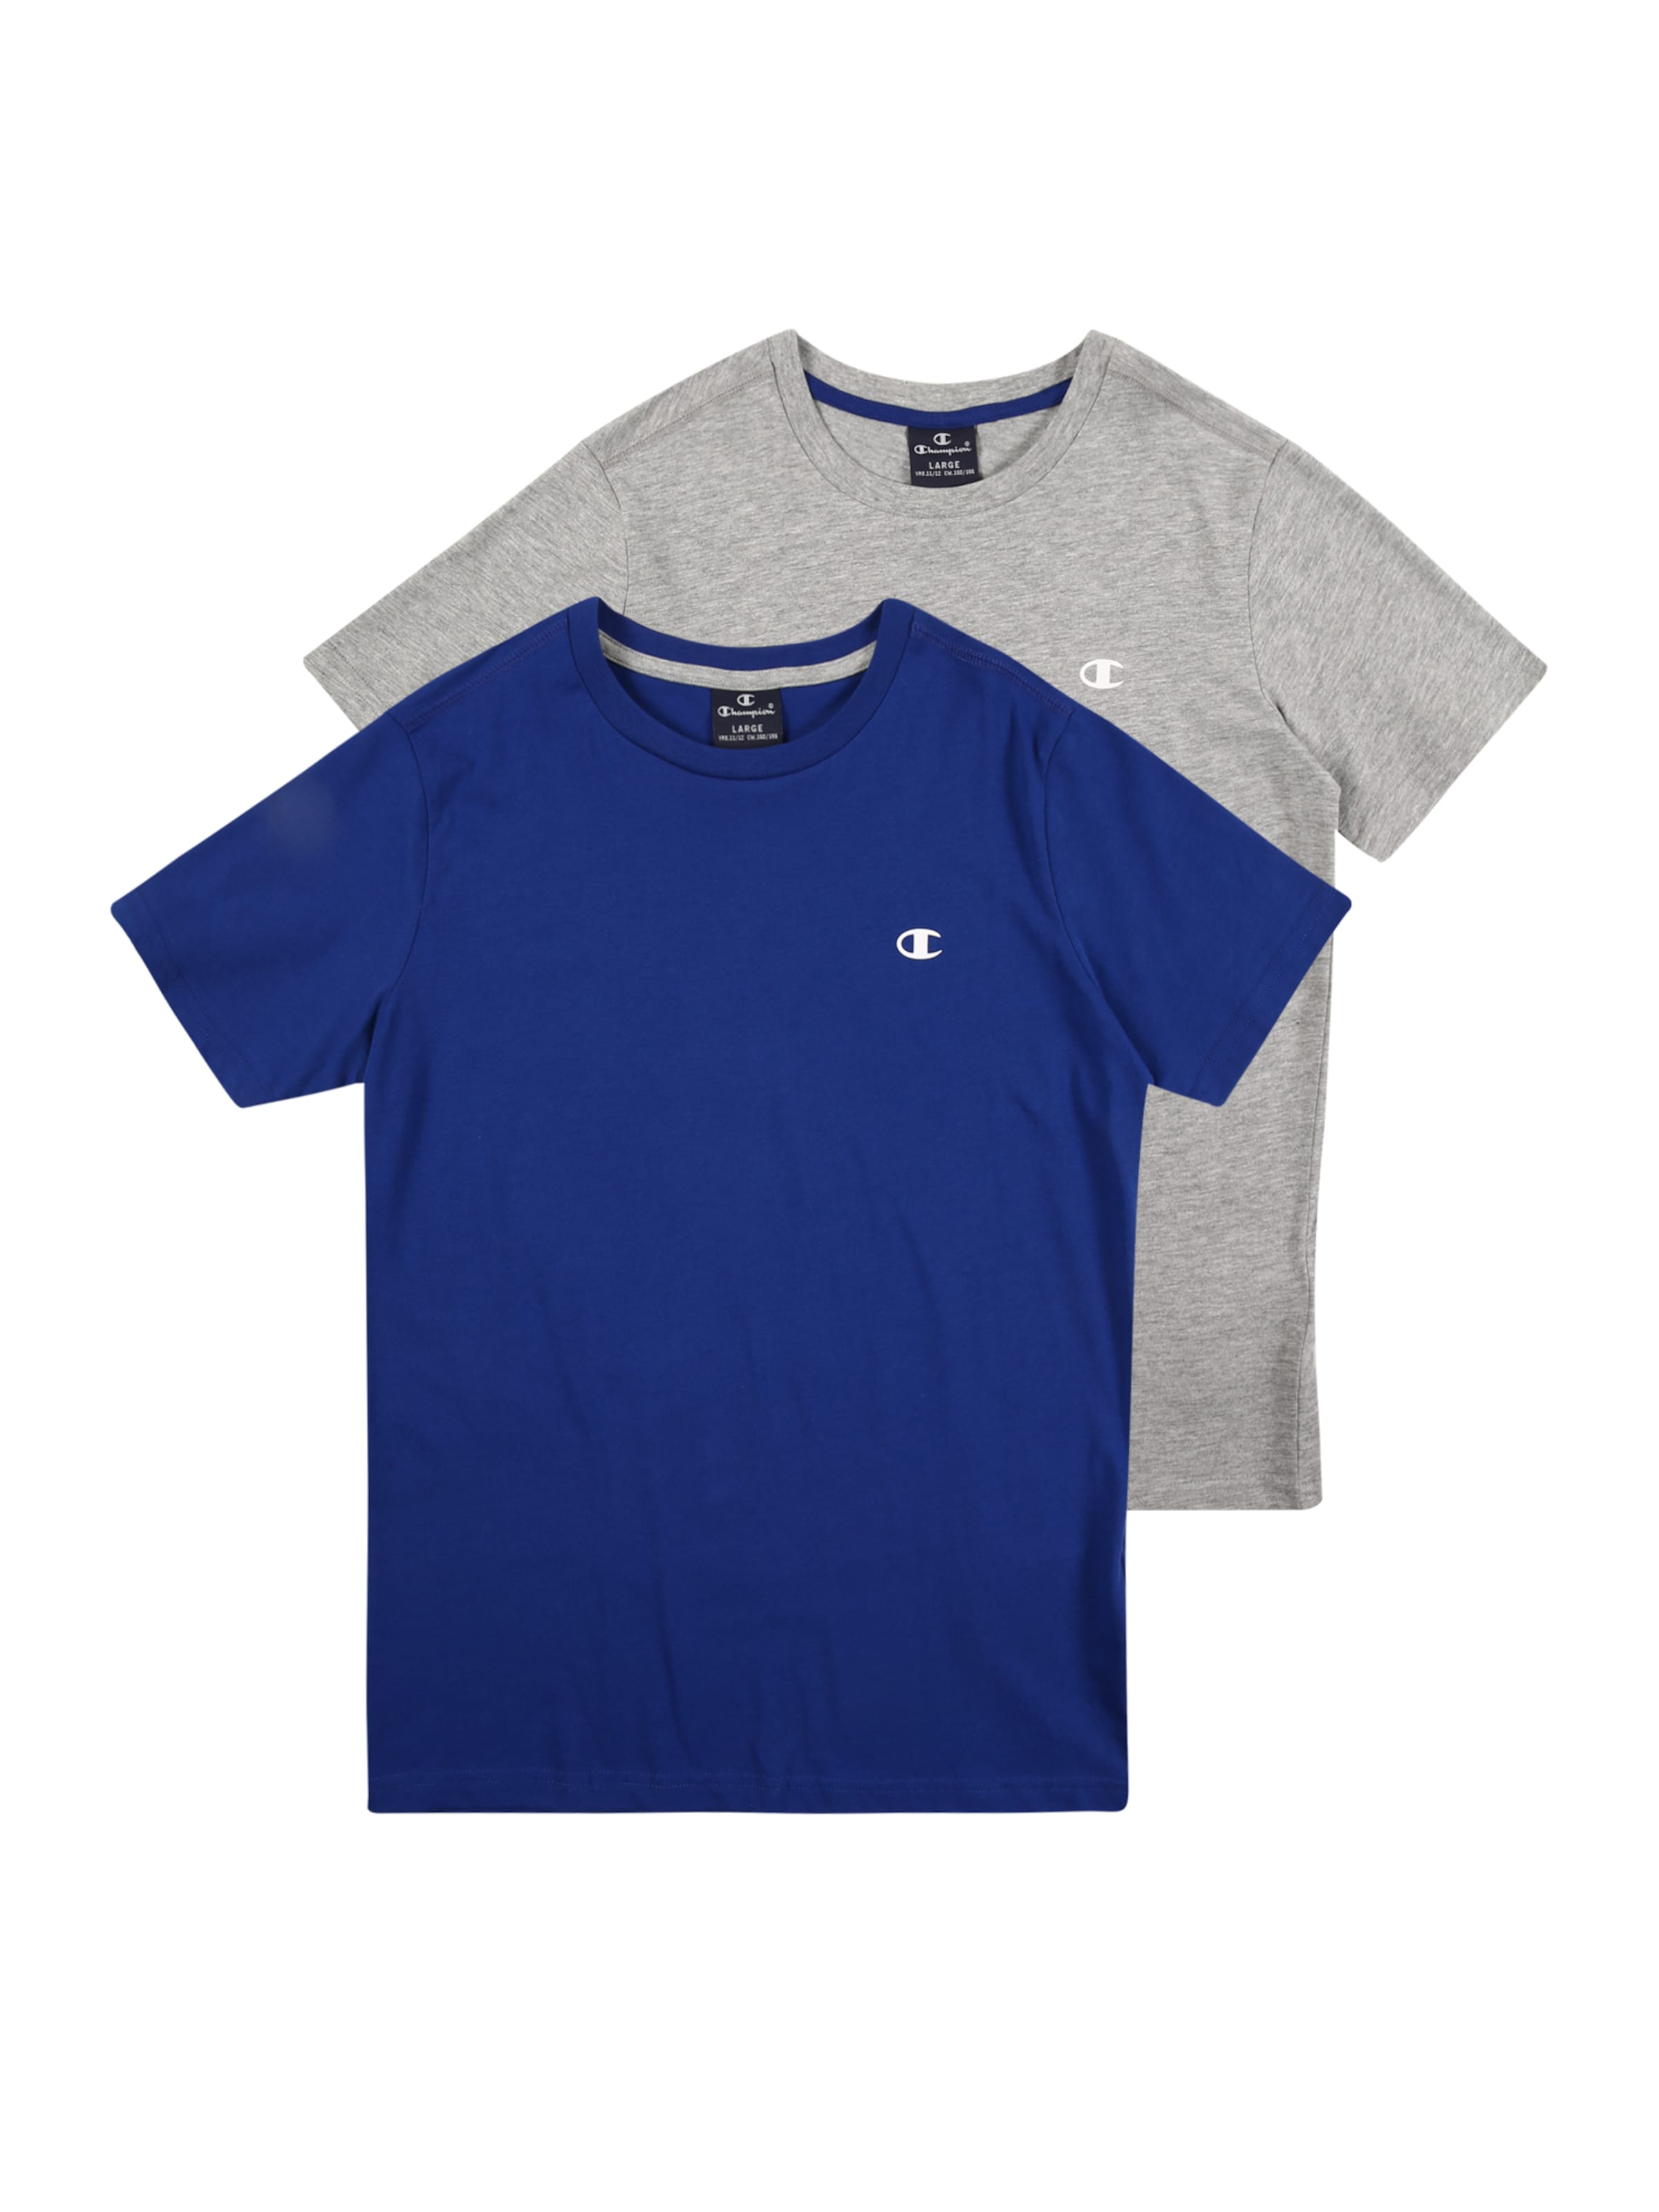 Royal Blue Athletic Shirt Hotsell, 52 ...